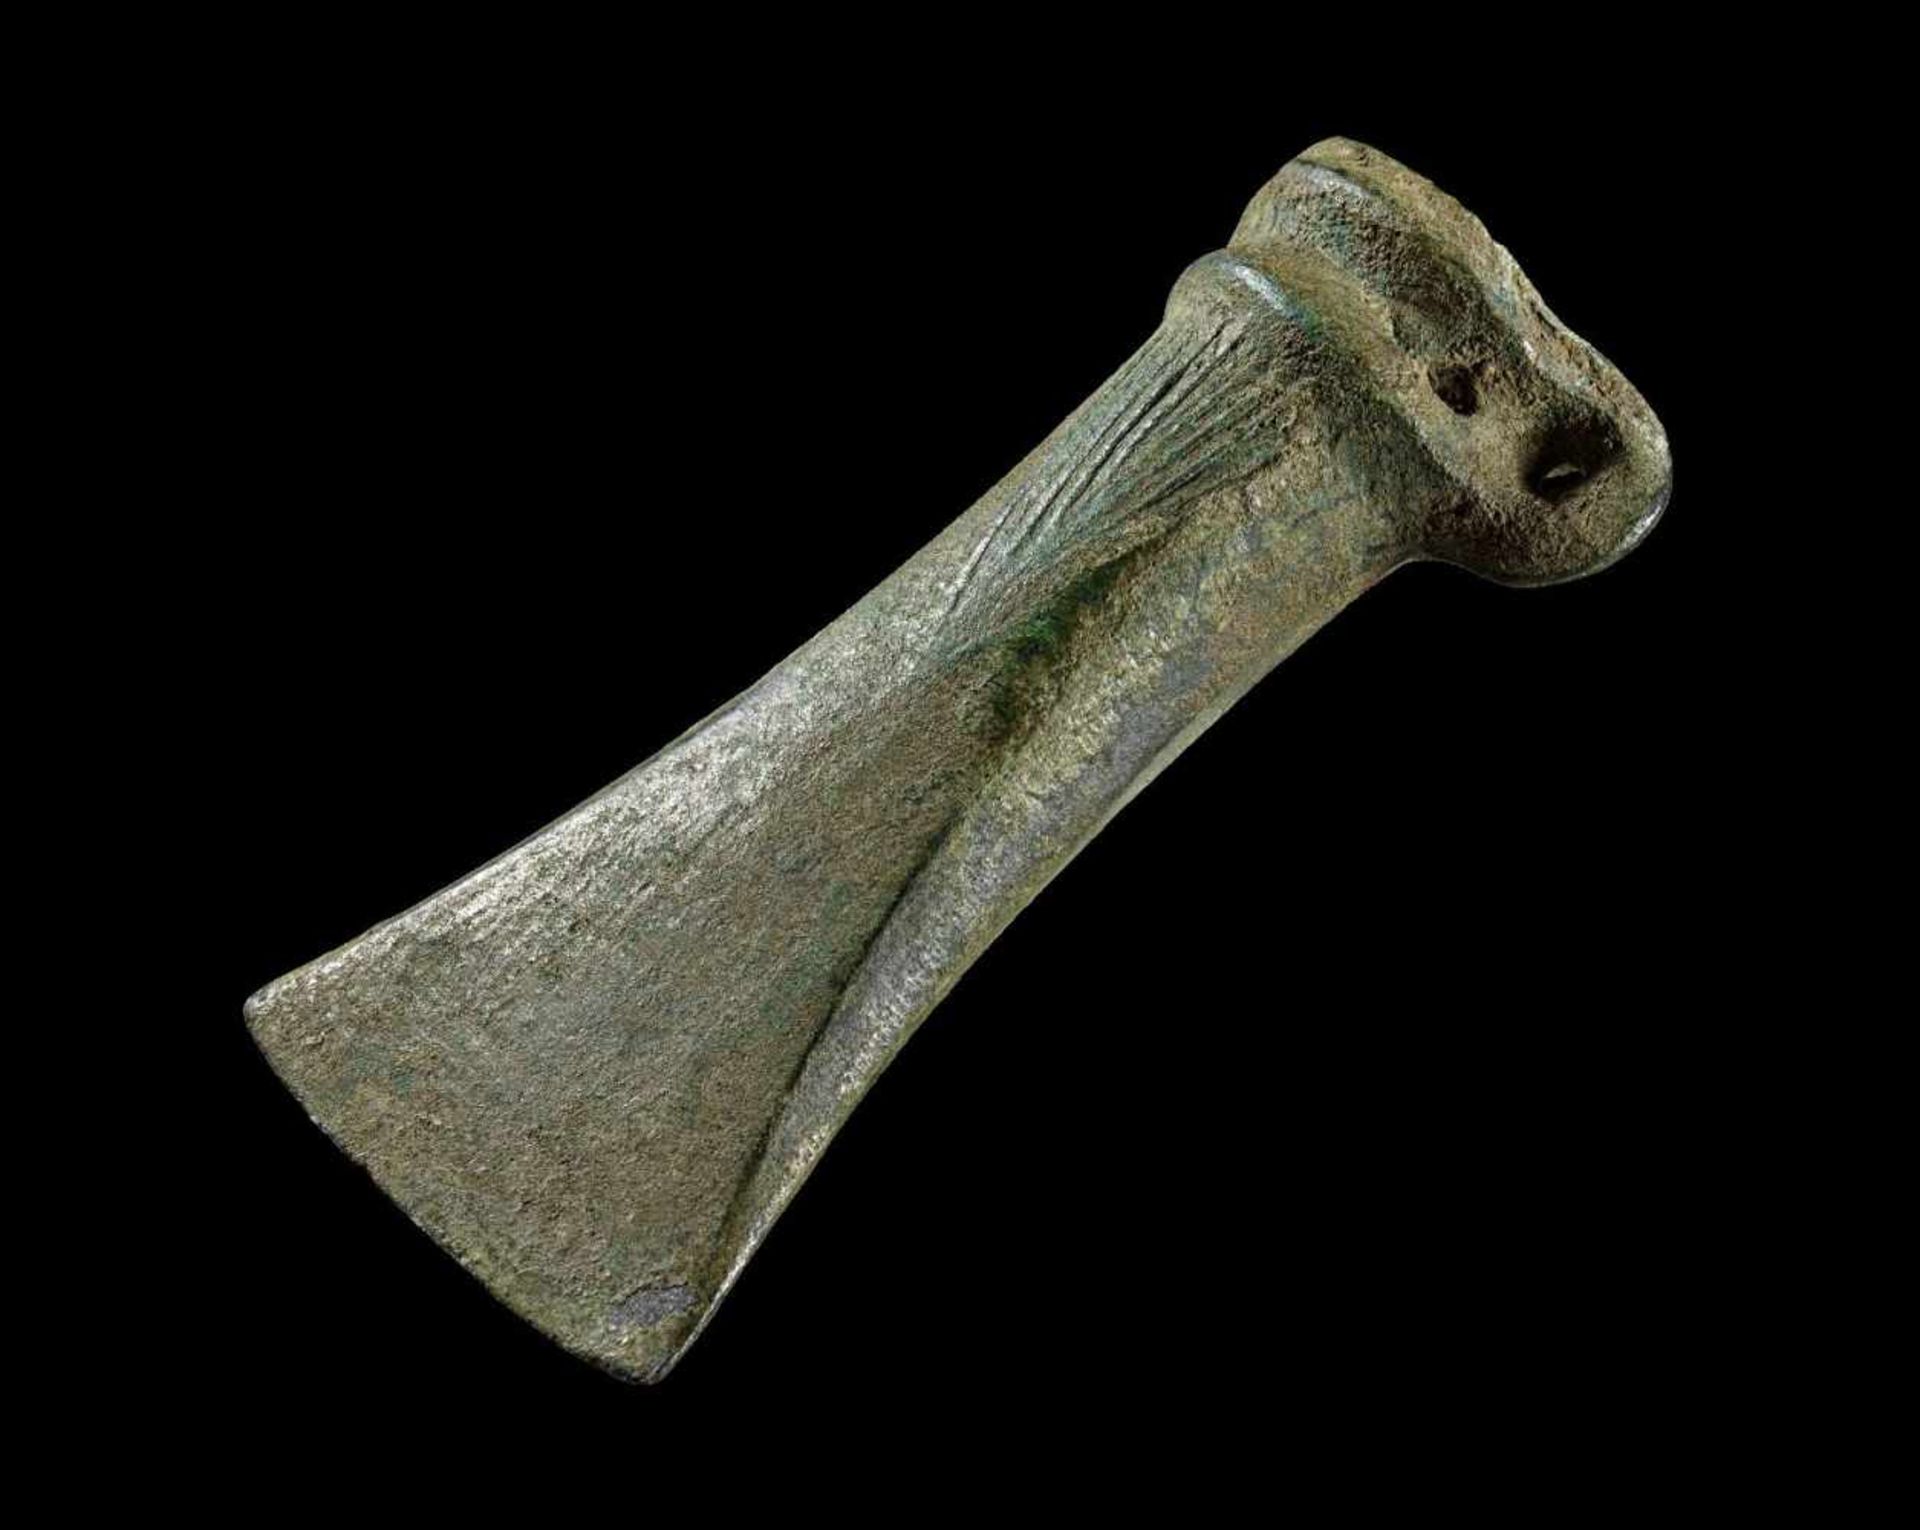 Tüllenbeil aus Bronze. Mitteleuropa, Jüngere bis spätere Bronzezeit, 950 - 550 v. Chr. L 12,9cm.